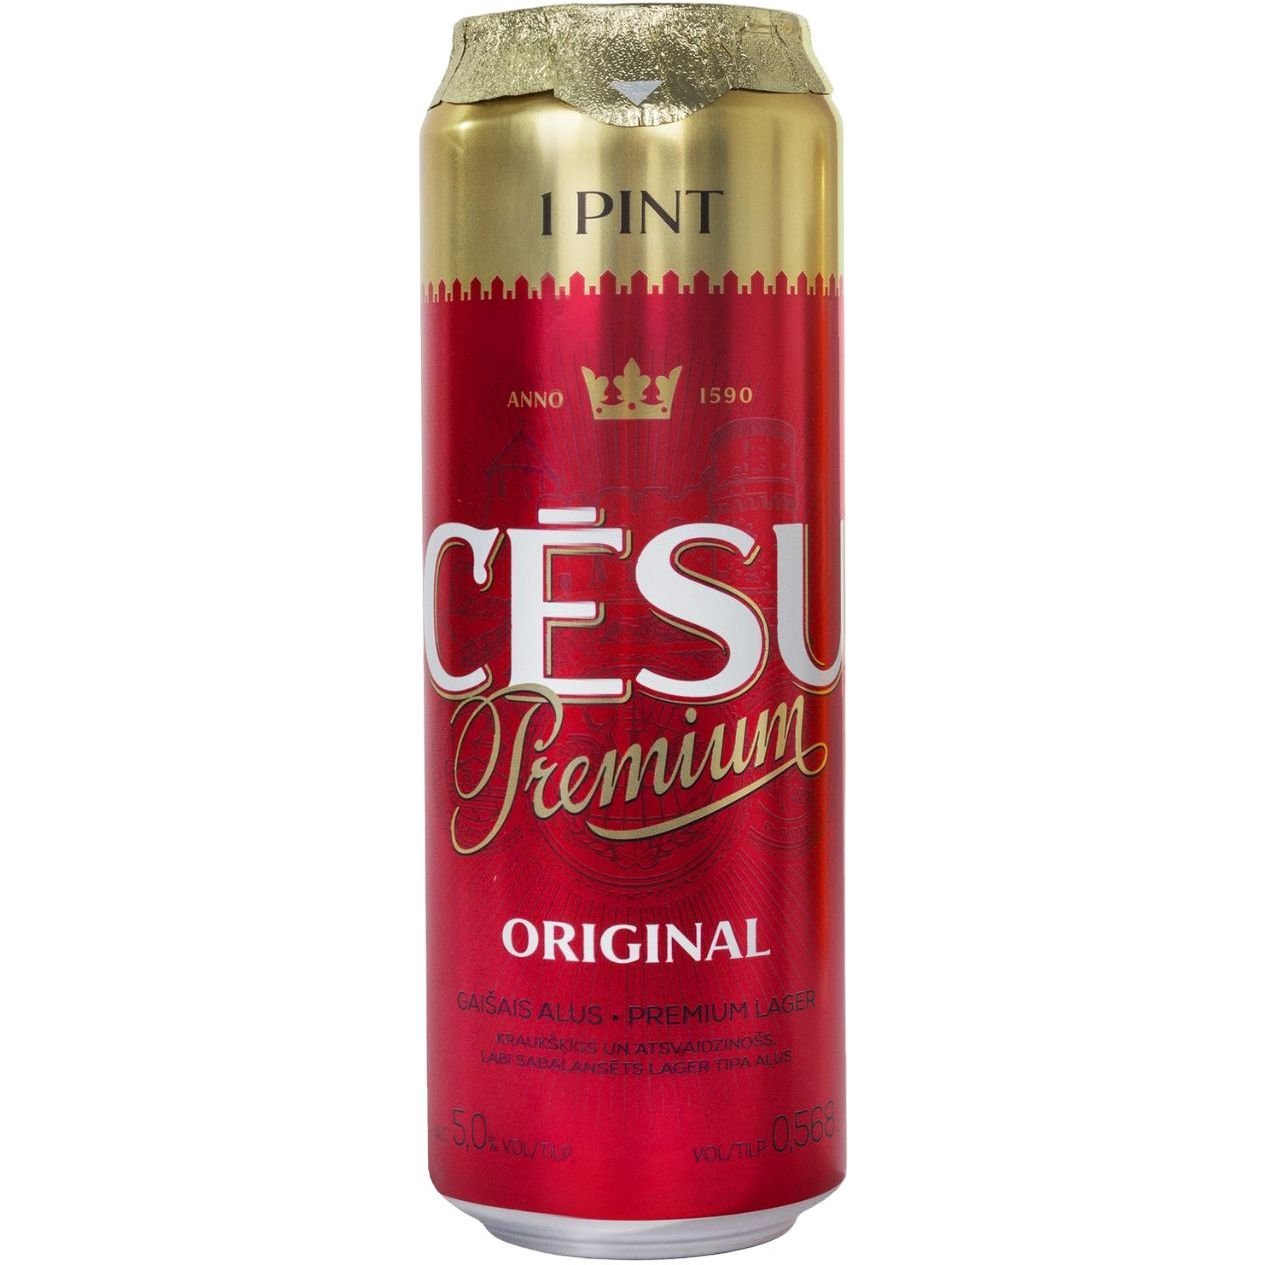 Пиво Cesu Premium Original, світле, фільтроване, 5%, з/б, 0,568 л - фото 1